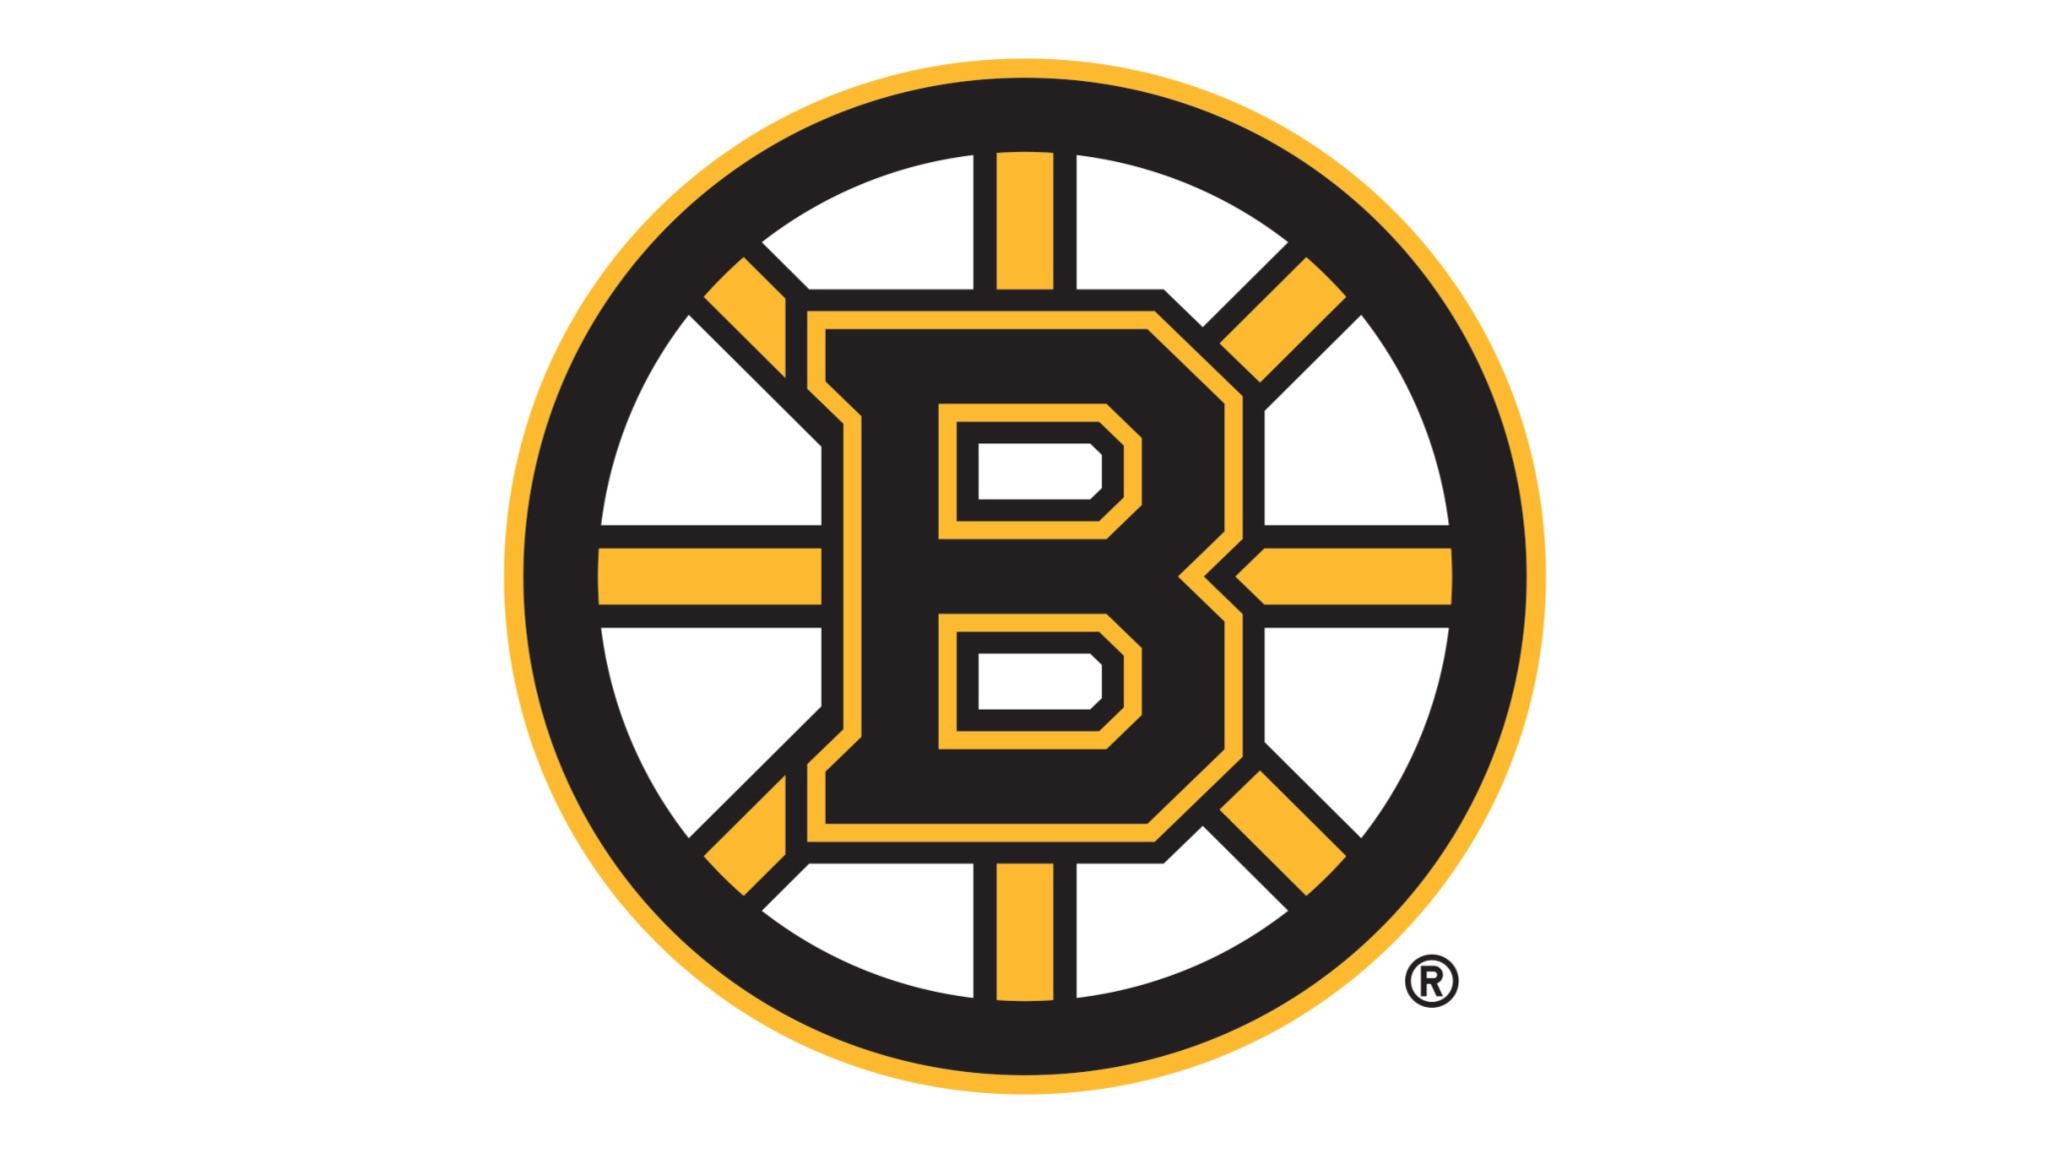 Boston Bruins vs. Colorado Avalanche